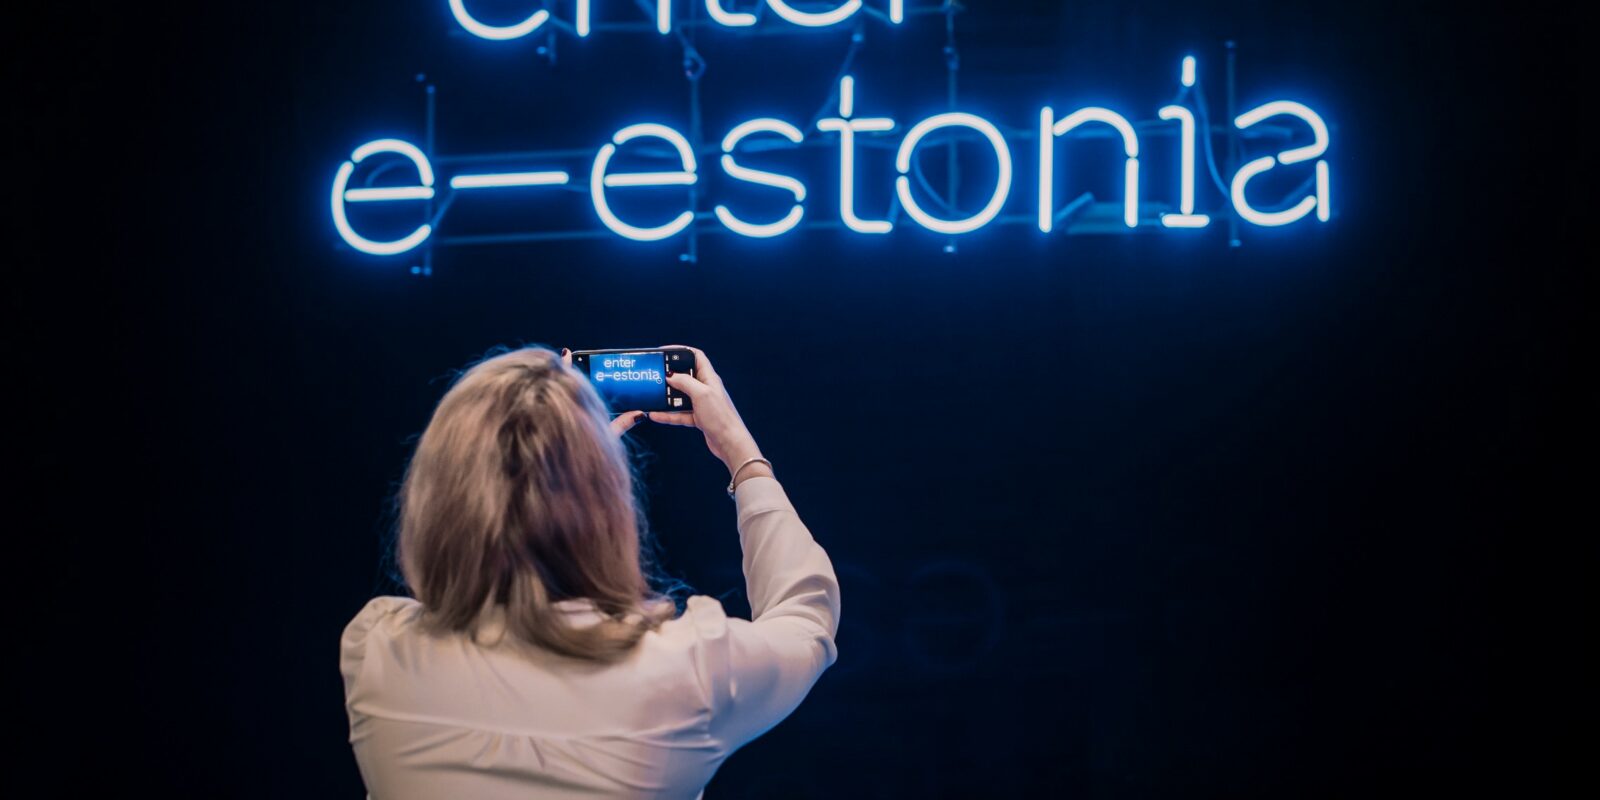 Благодаря программе e-Estonia, стране удалось минимизировать общение граждан с чиновниками. Фото: e-estonia.com